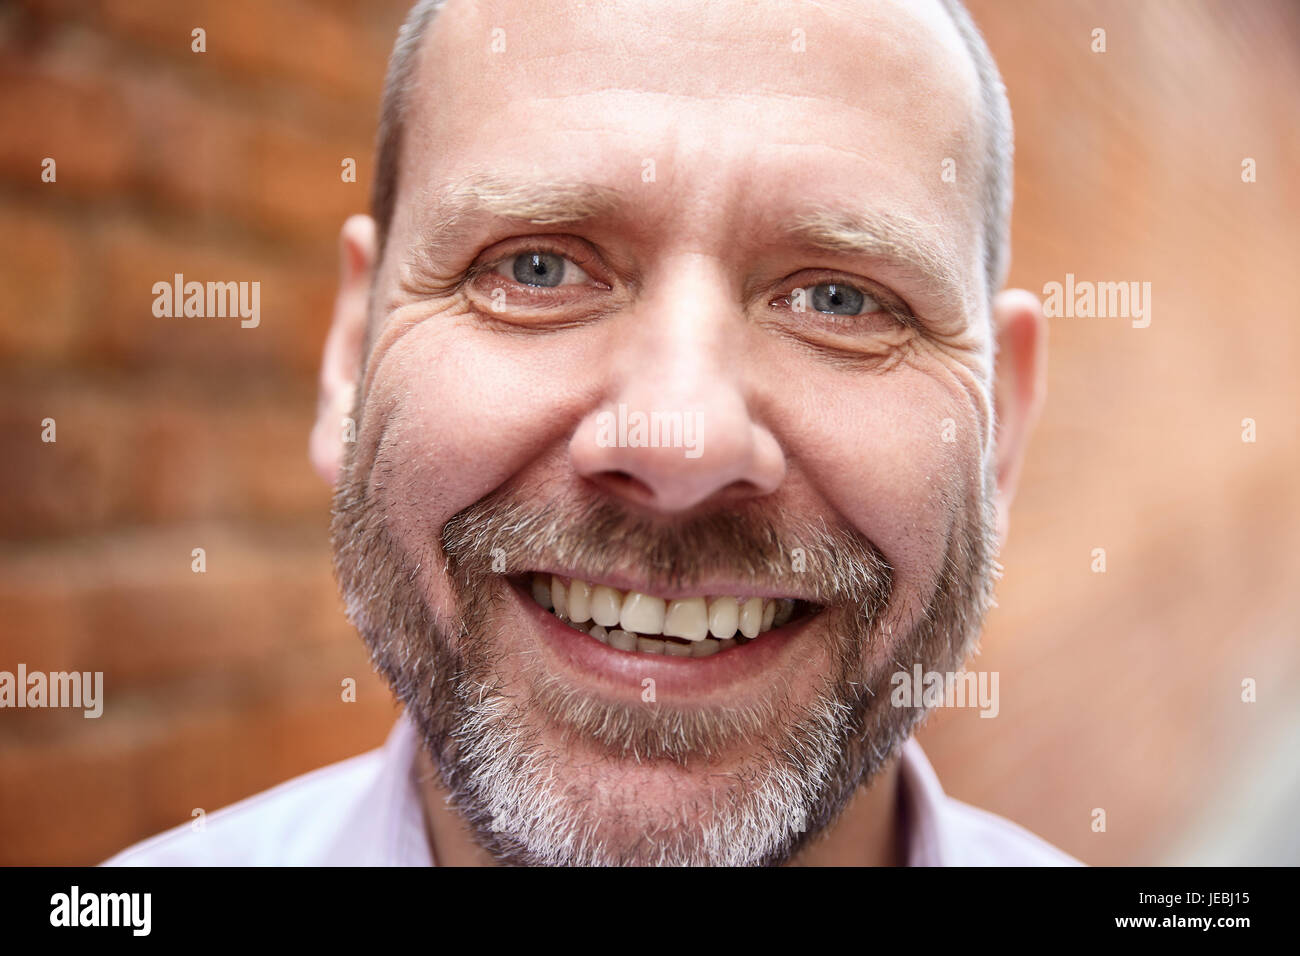 Close-up portrait portrait of smiling mature réel de l'homme contre un mur de briques. Banque D'Images